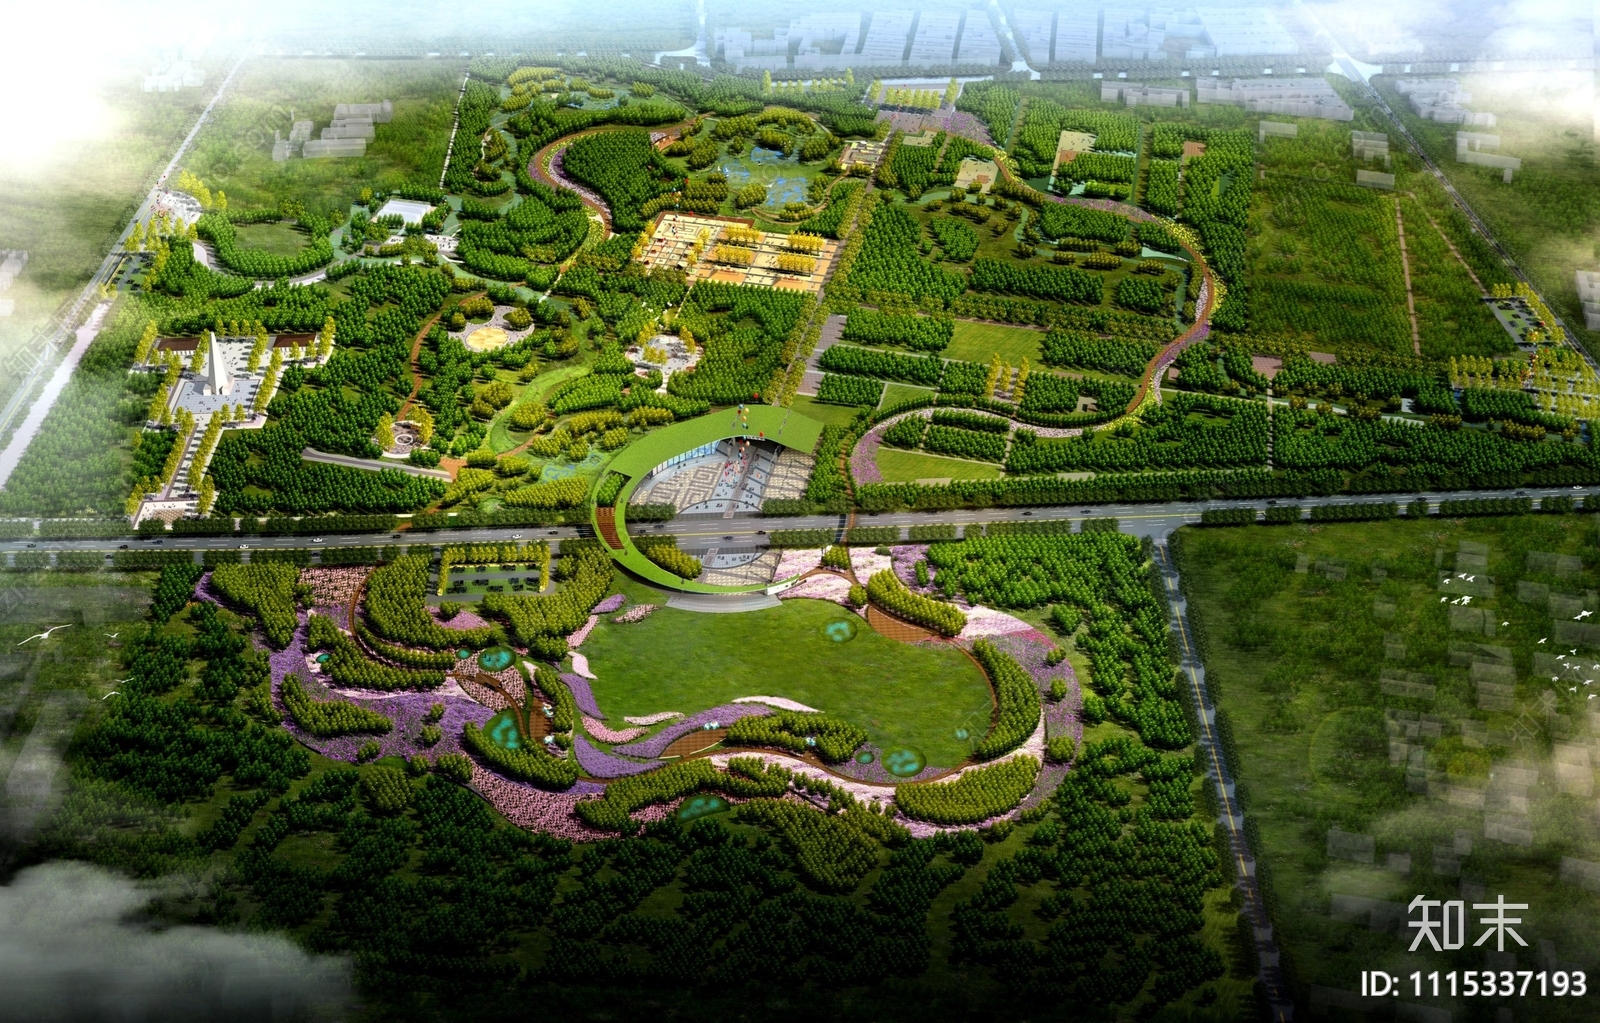 锡林浩特人民公园景观概念设计方案文本下载【ID:1115337193】